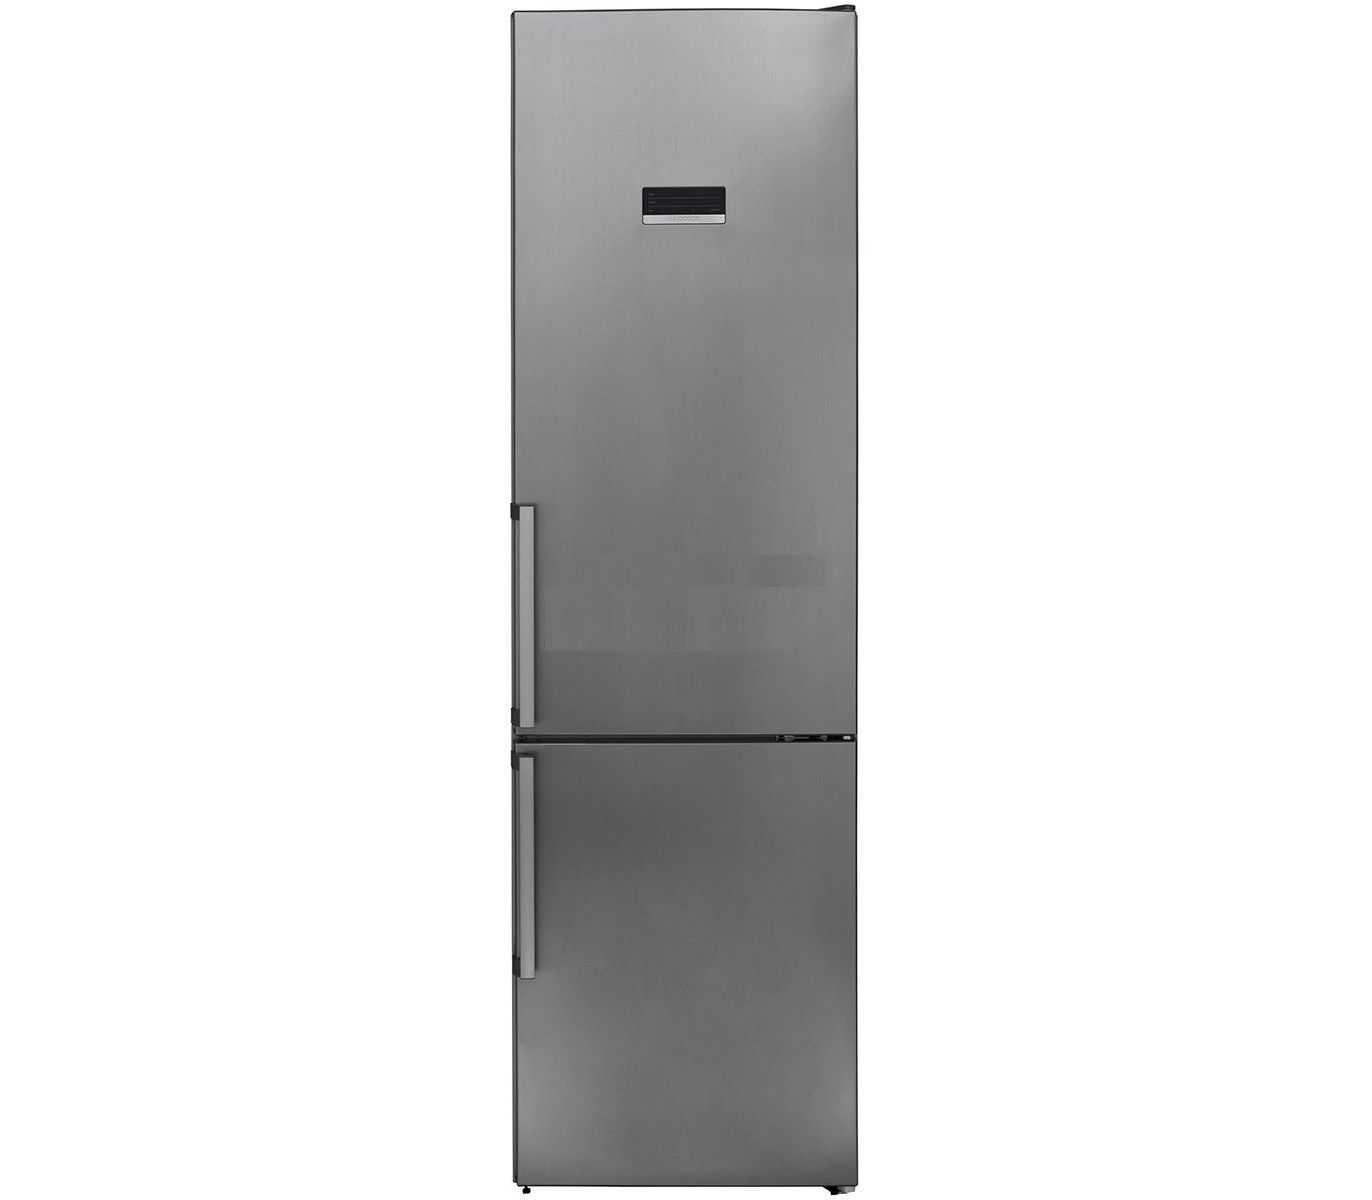 Холодильники whirlpool: топ-5 лучших моделей, отзывы, советы по выбору - все об инженерных системах